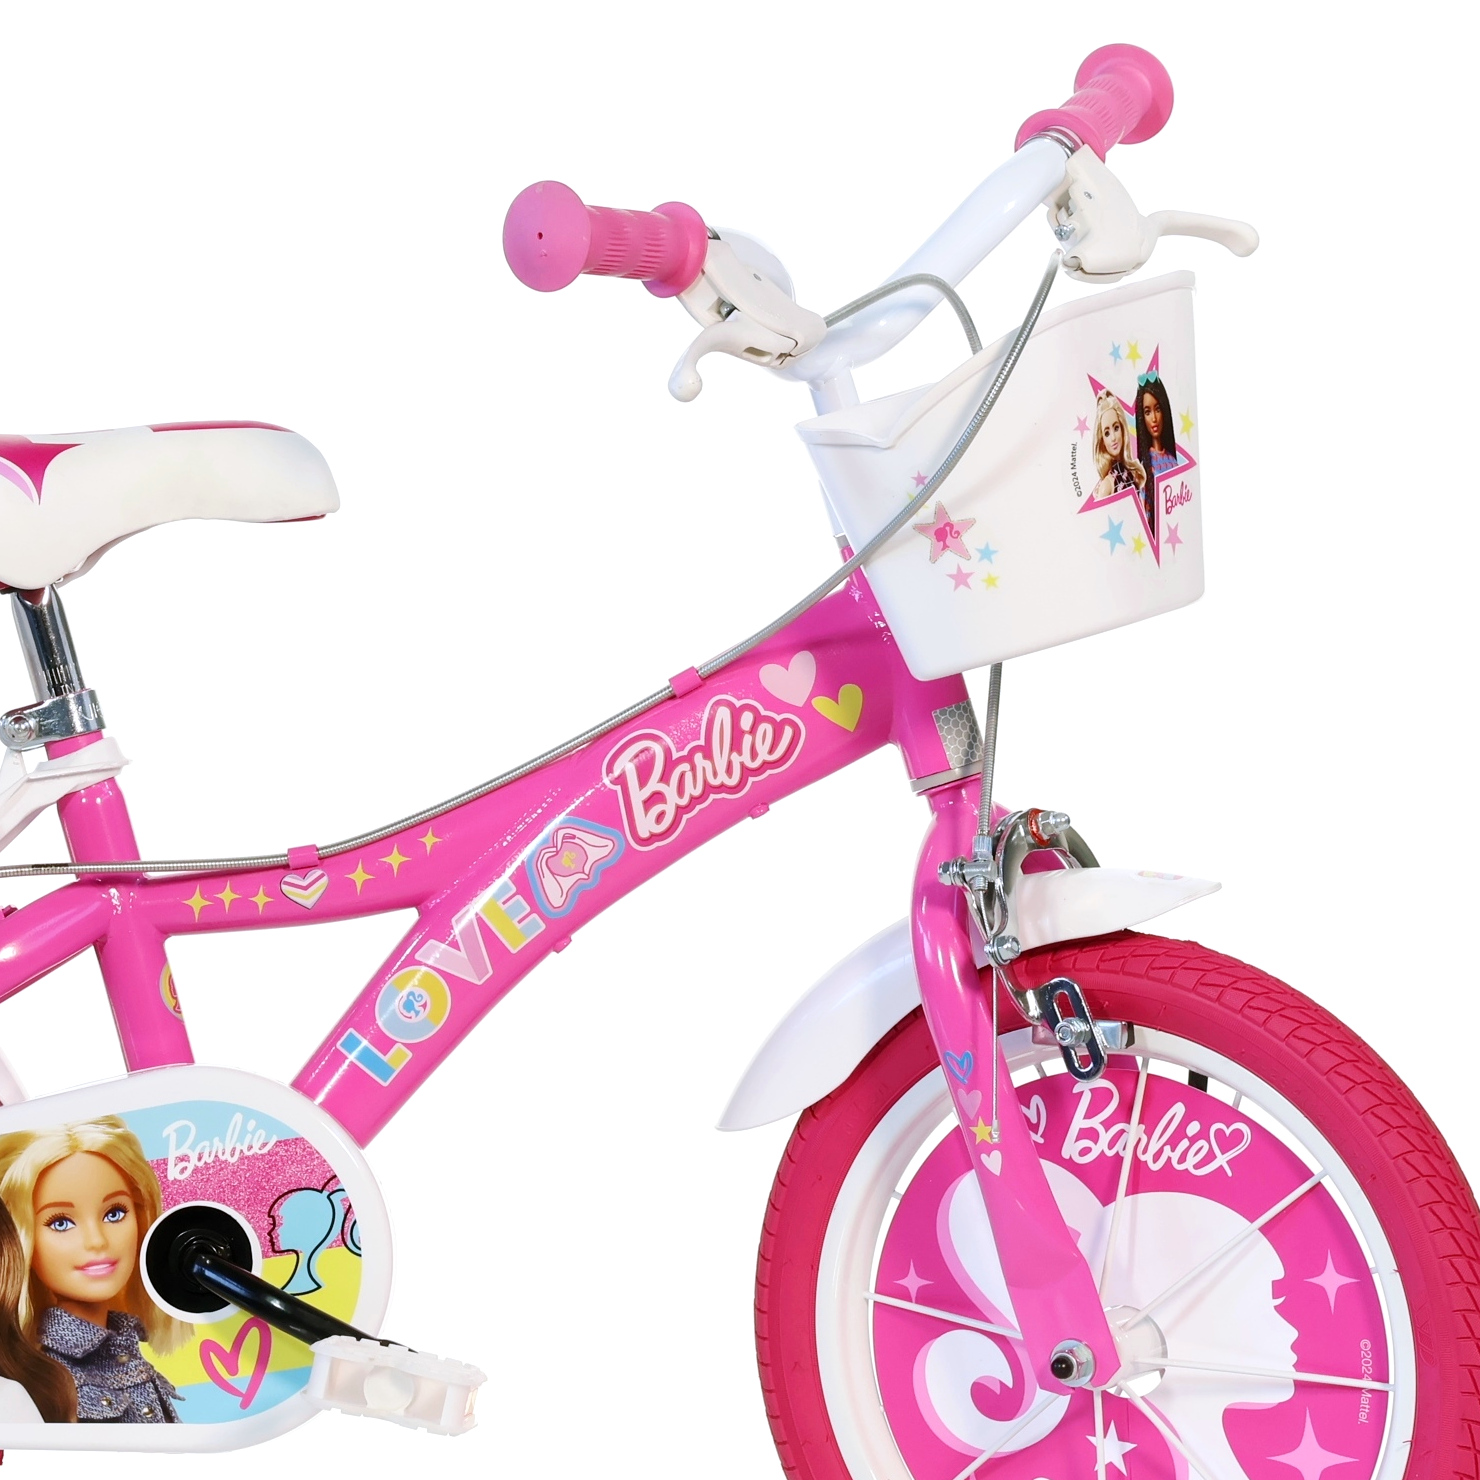 Bicicleta Niños 14 Pulgadas Barbie Rosado 4-6 Años